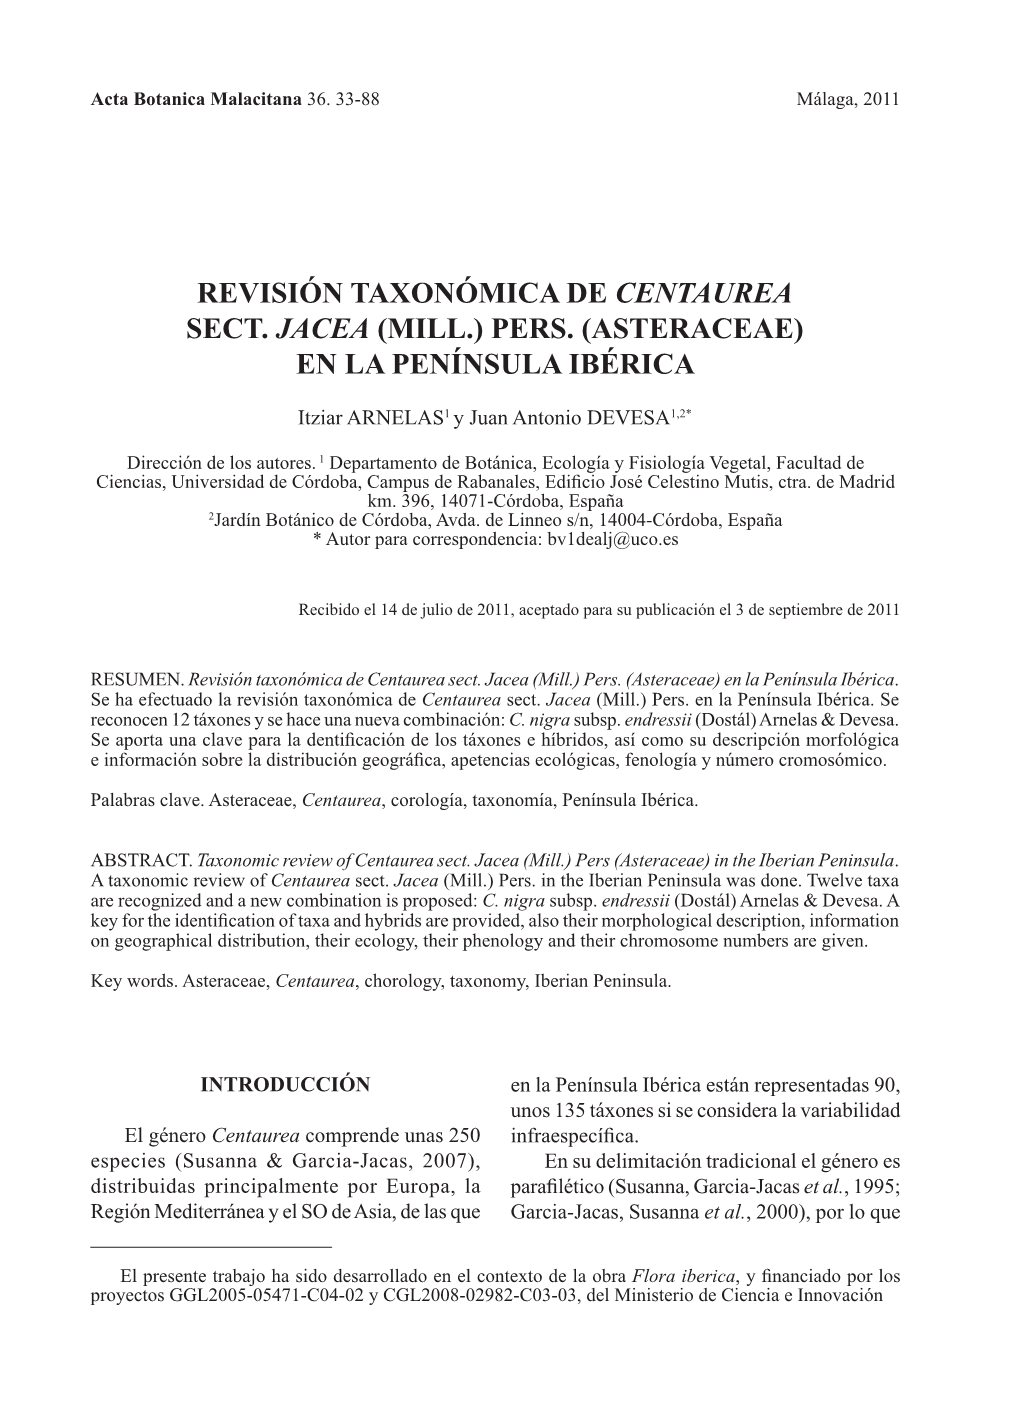 Revisión Taxonómica De Centaurea Sect. Jacea (Mill.) Pers